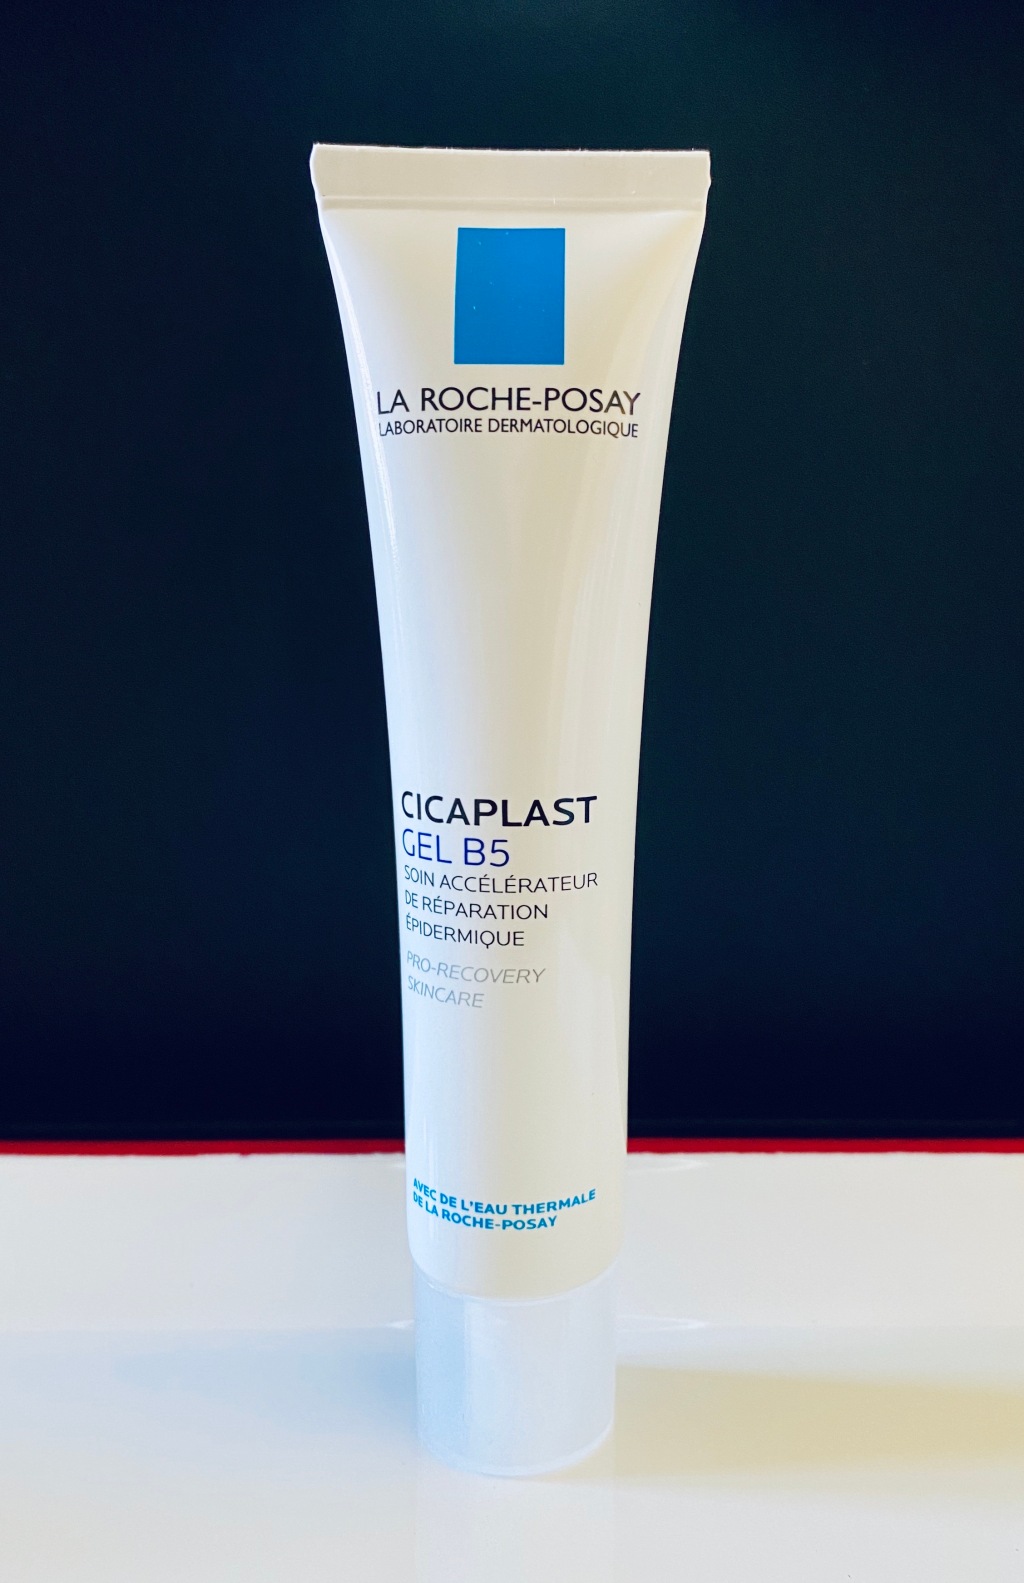 La Roche-Posay Cicaplast Gel B5 – Review